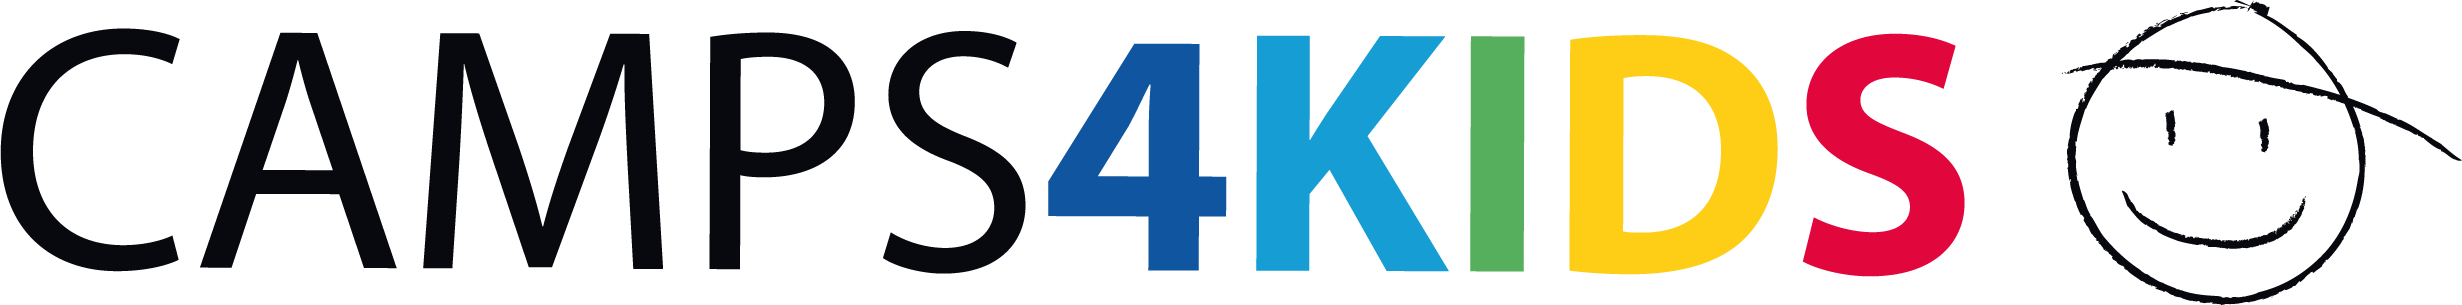 logo C4K Smiley